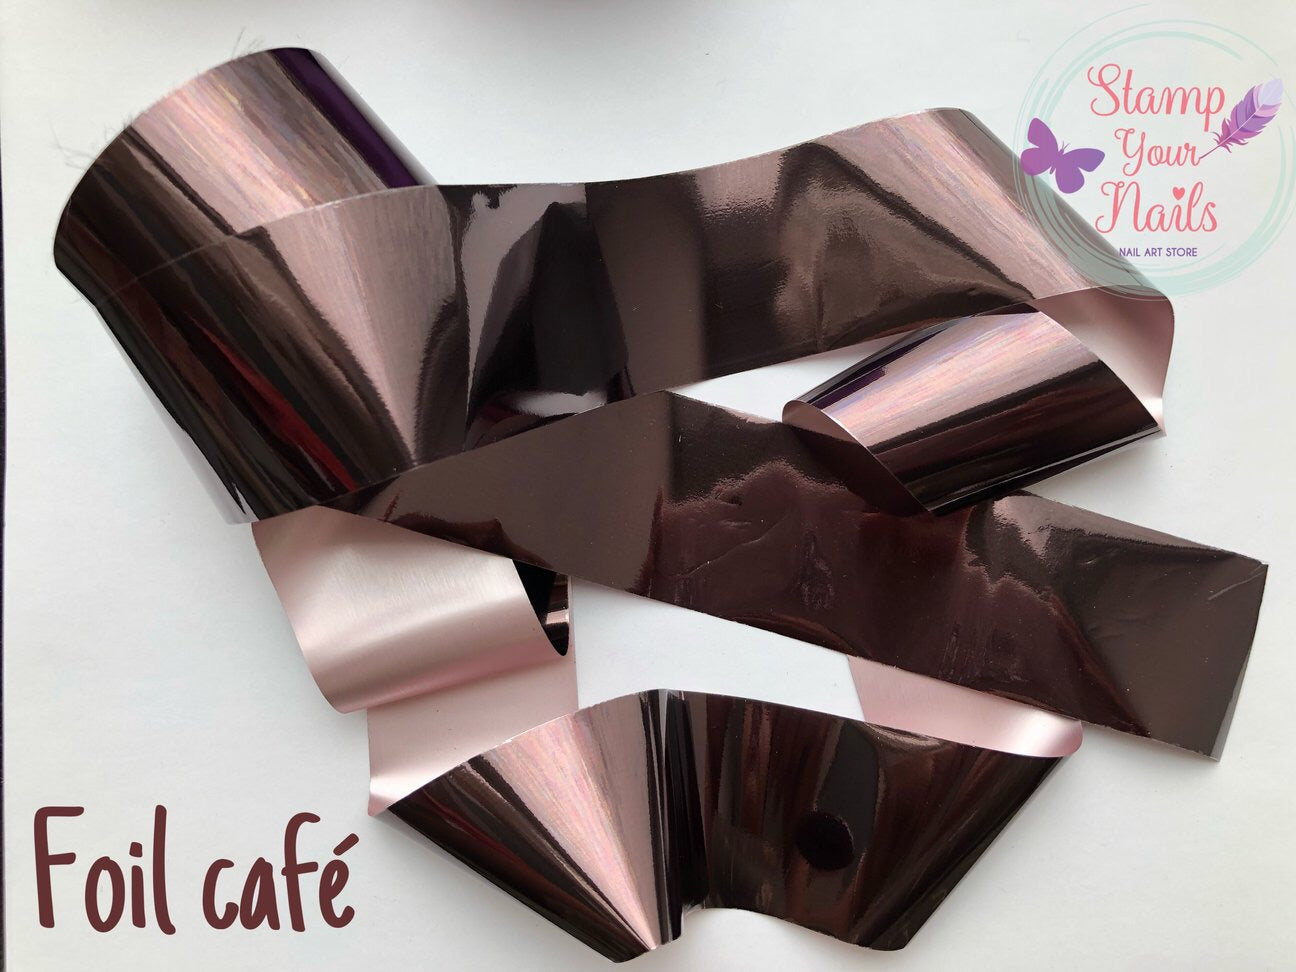 Foil Café - Stamp your nails